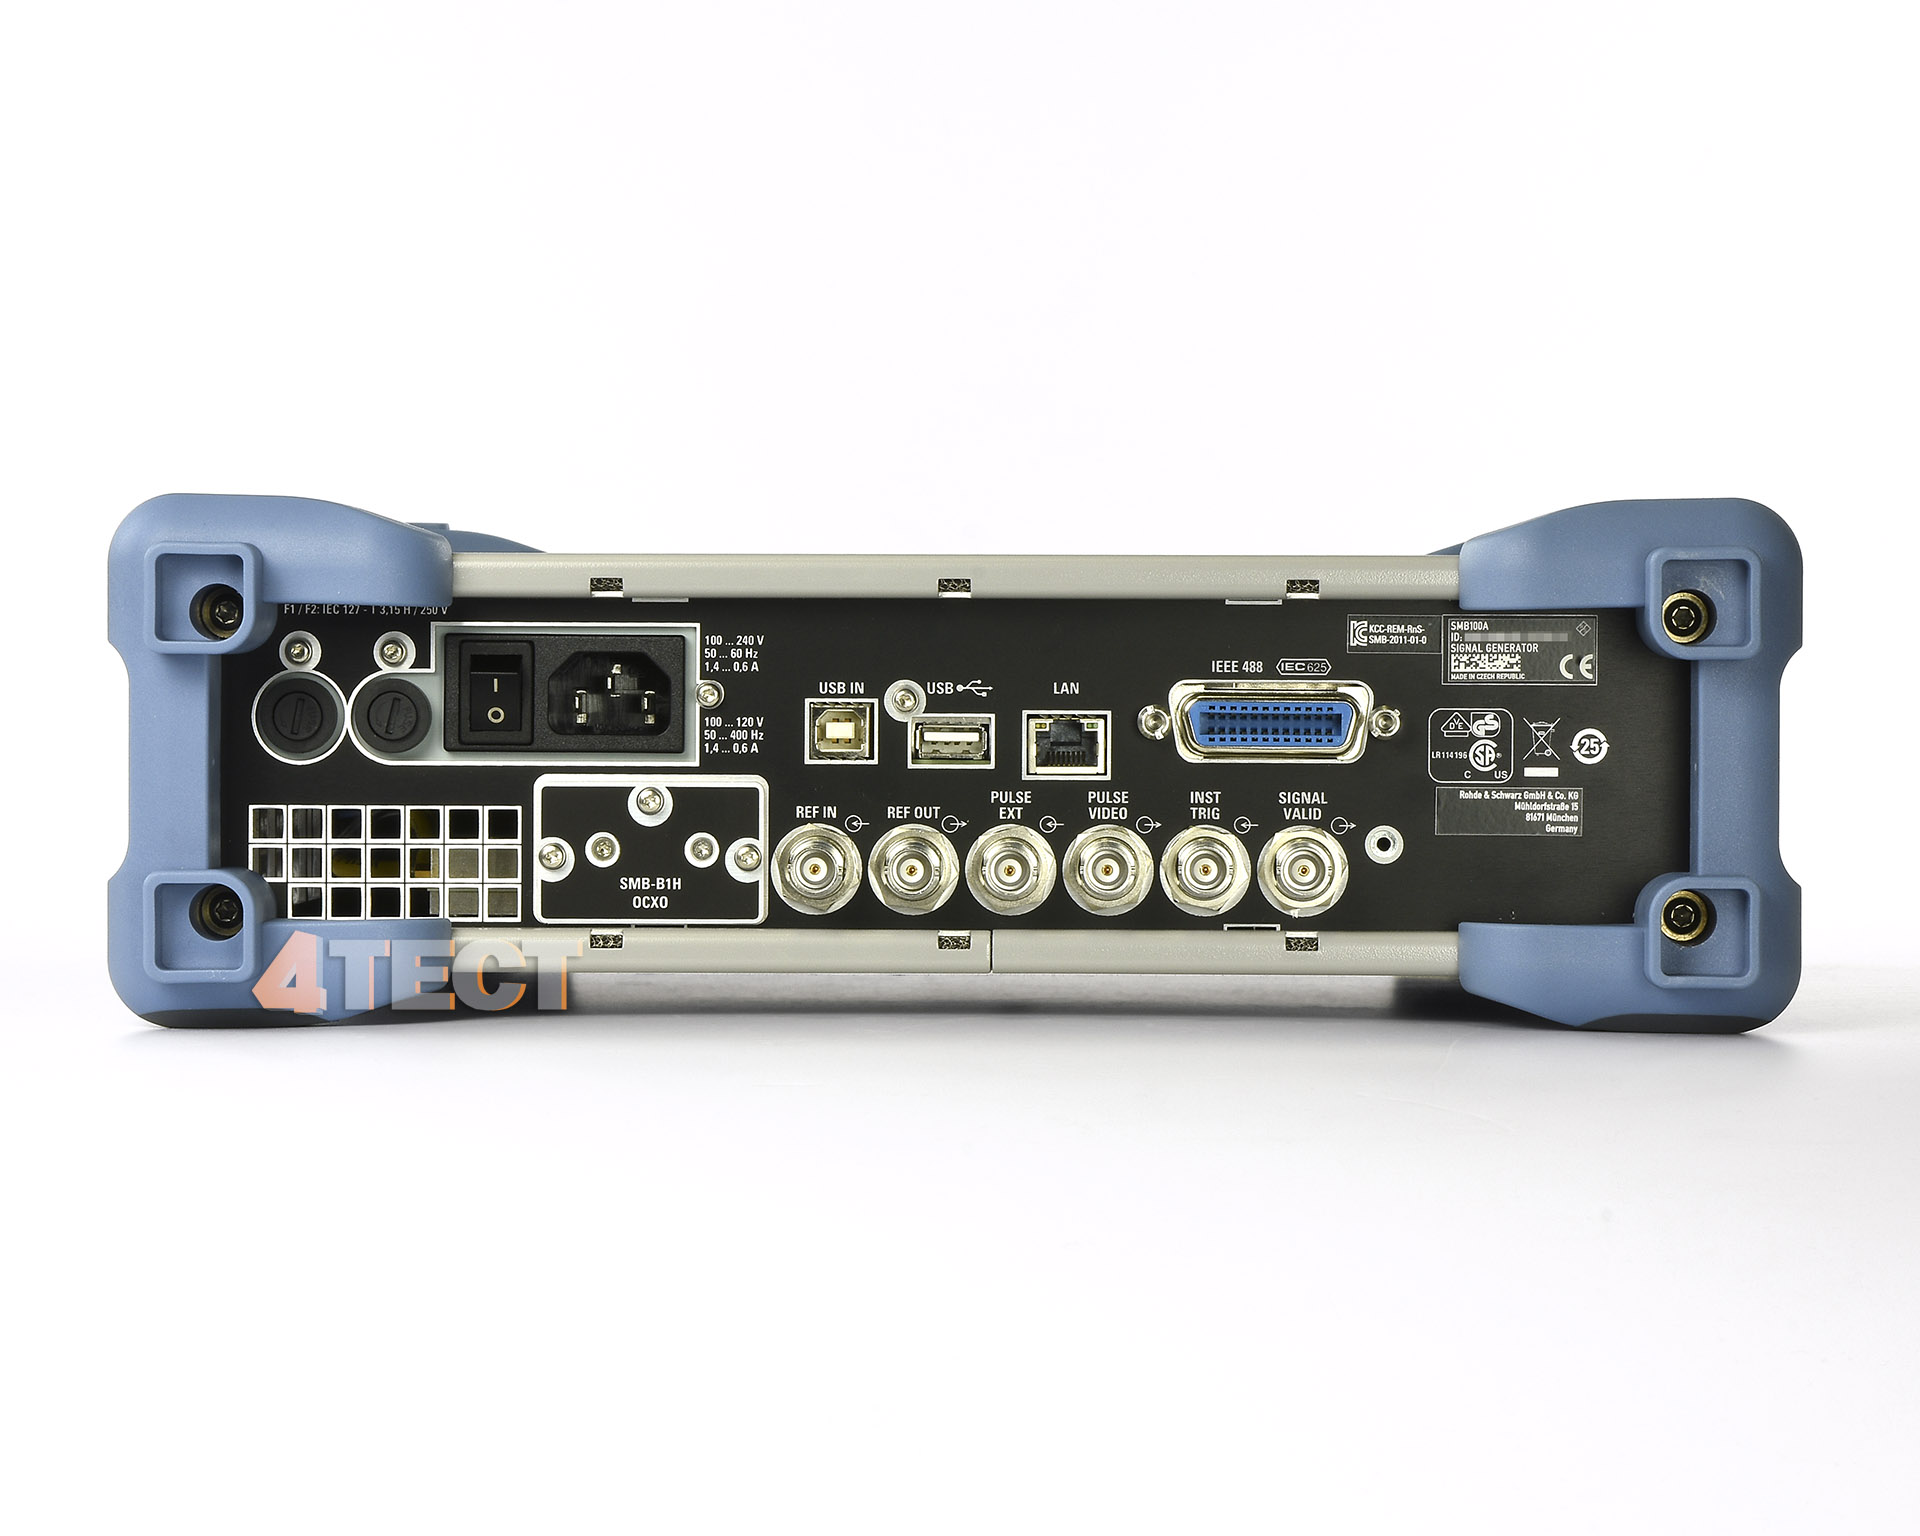 Генератор сигналов Rohde&Schwarz SMB100Aс диапазоном частот от 100 кГц до 40 ГГц

	В комплекте с опциями:


	SMB-B140N - ВЧ тракт, от 100 кГц до 40 ГГц с механическим ступенчатым аттенюатором, ограничение минимальной длительности импульса
	SMB-B1H - Термостатированный опорный кварцевый генератор с улучшенными характеристиками
	SMB-B26 - Опция фильтра гармоник от 150 МГц до 40 ГГц
